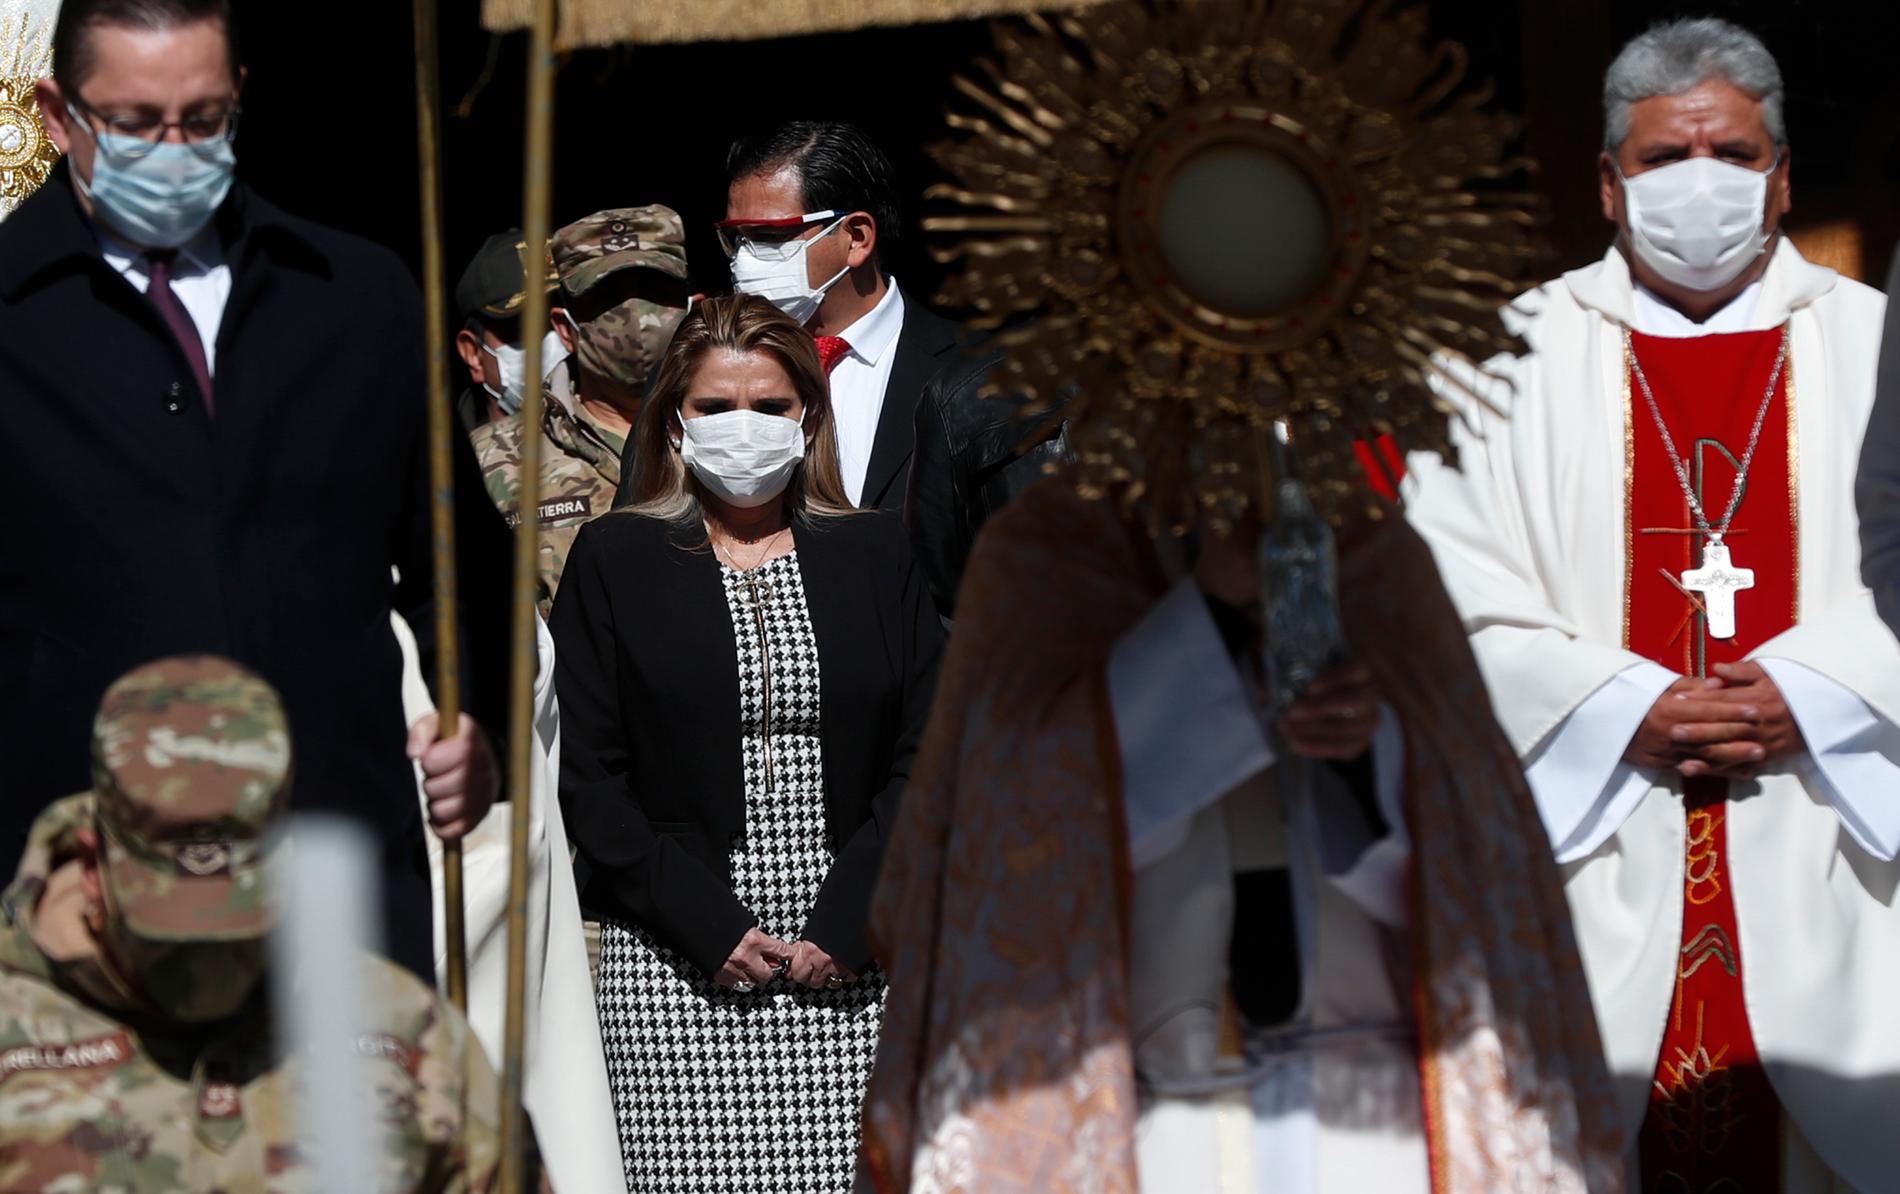 Bolivias interrimspresident Jeanine Áñez, i munskydd till vänster, vid ett sällsynt offentligt framträdande under en religiös högtid i juni.